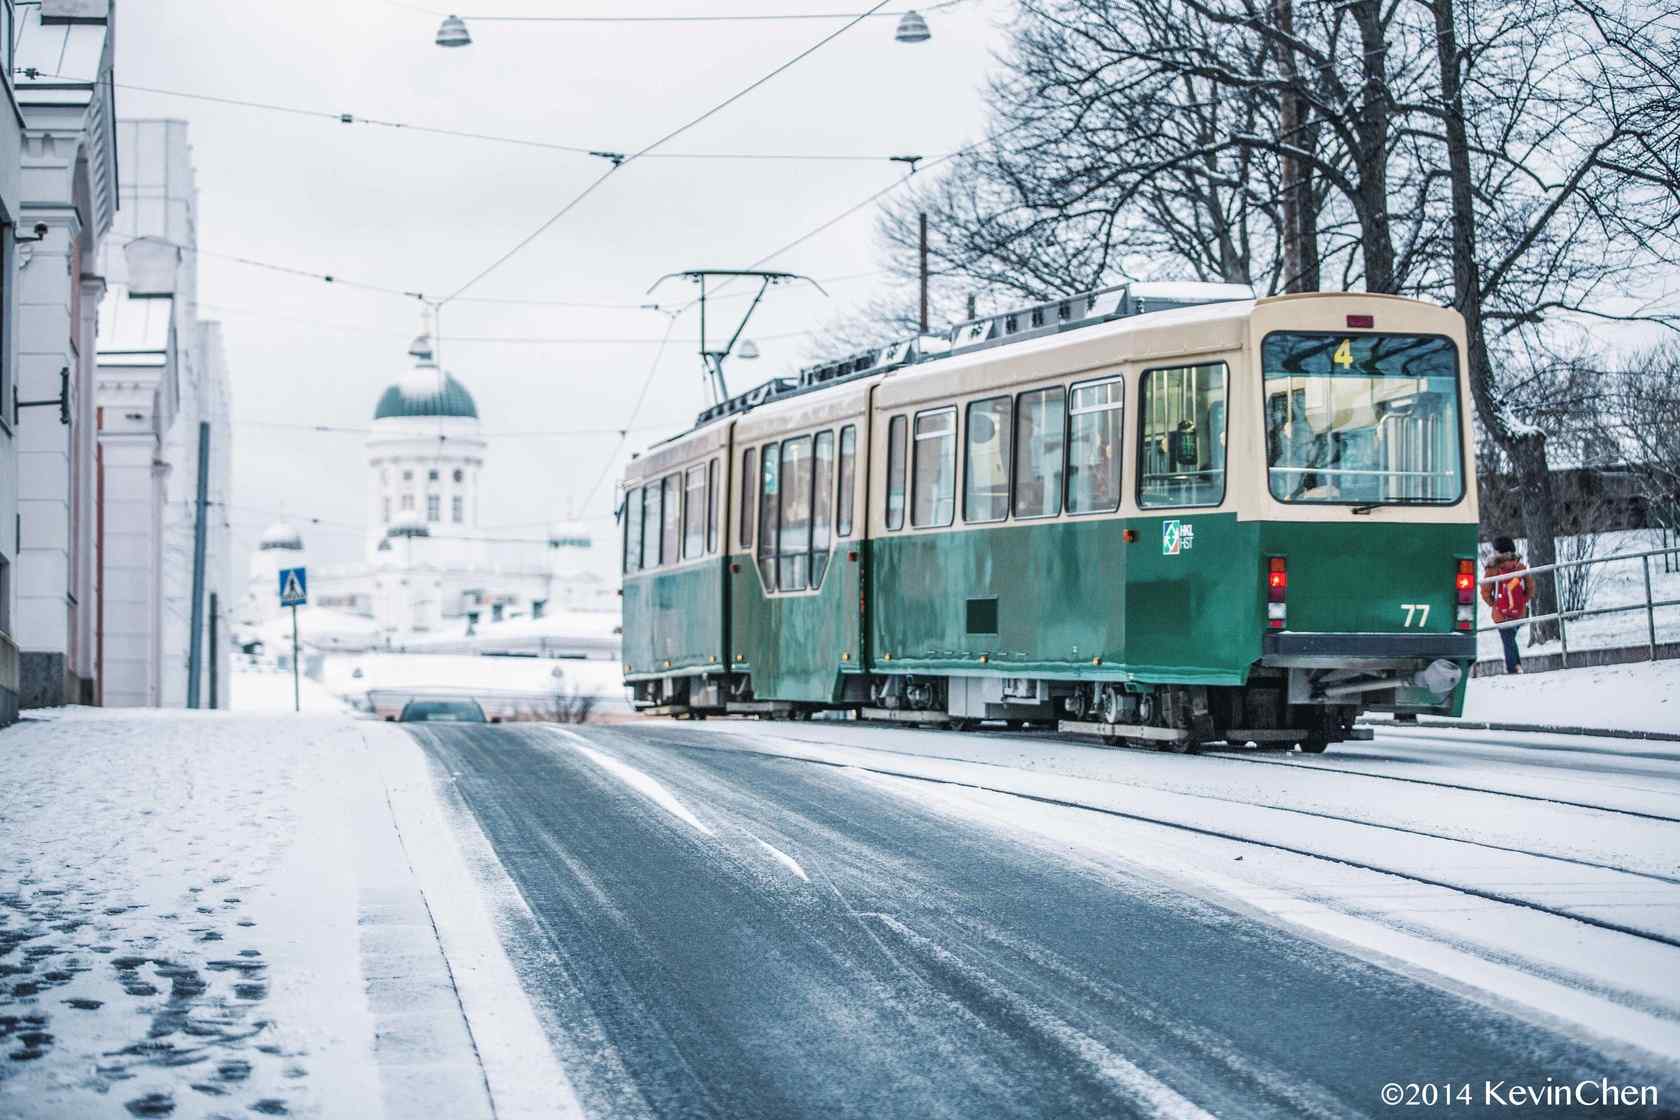  芬兰浪漫城市雪中电车桌面壁纸